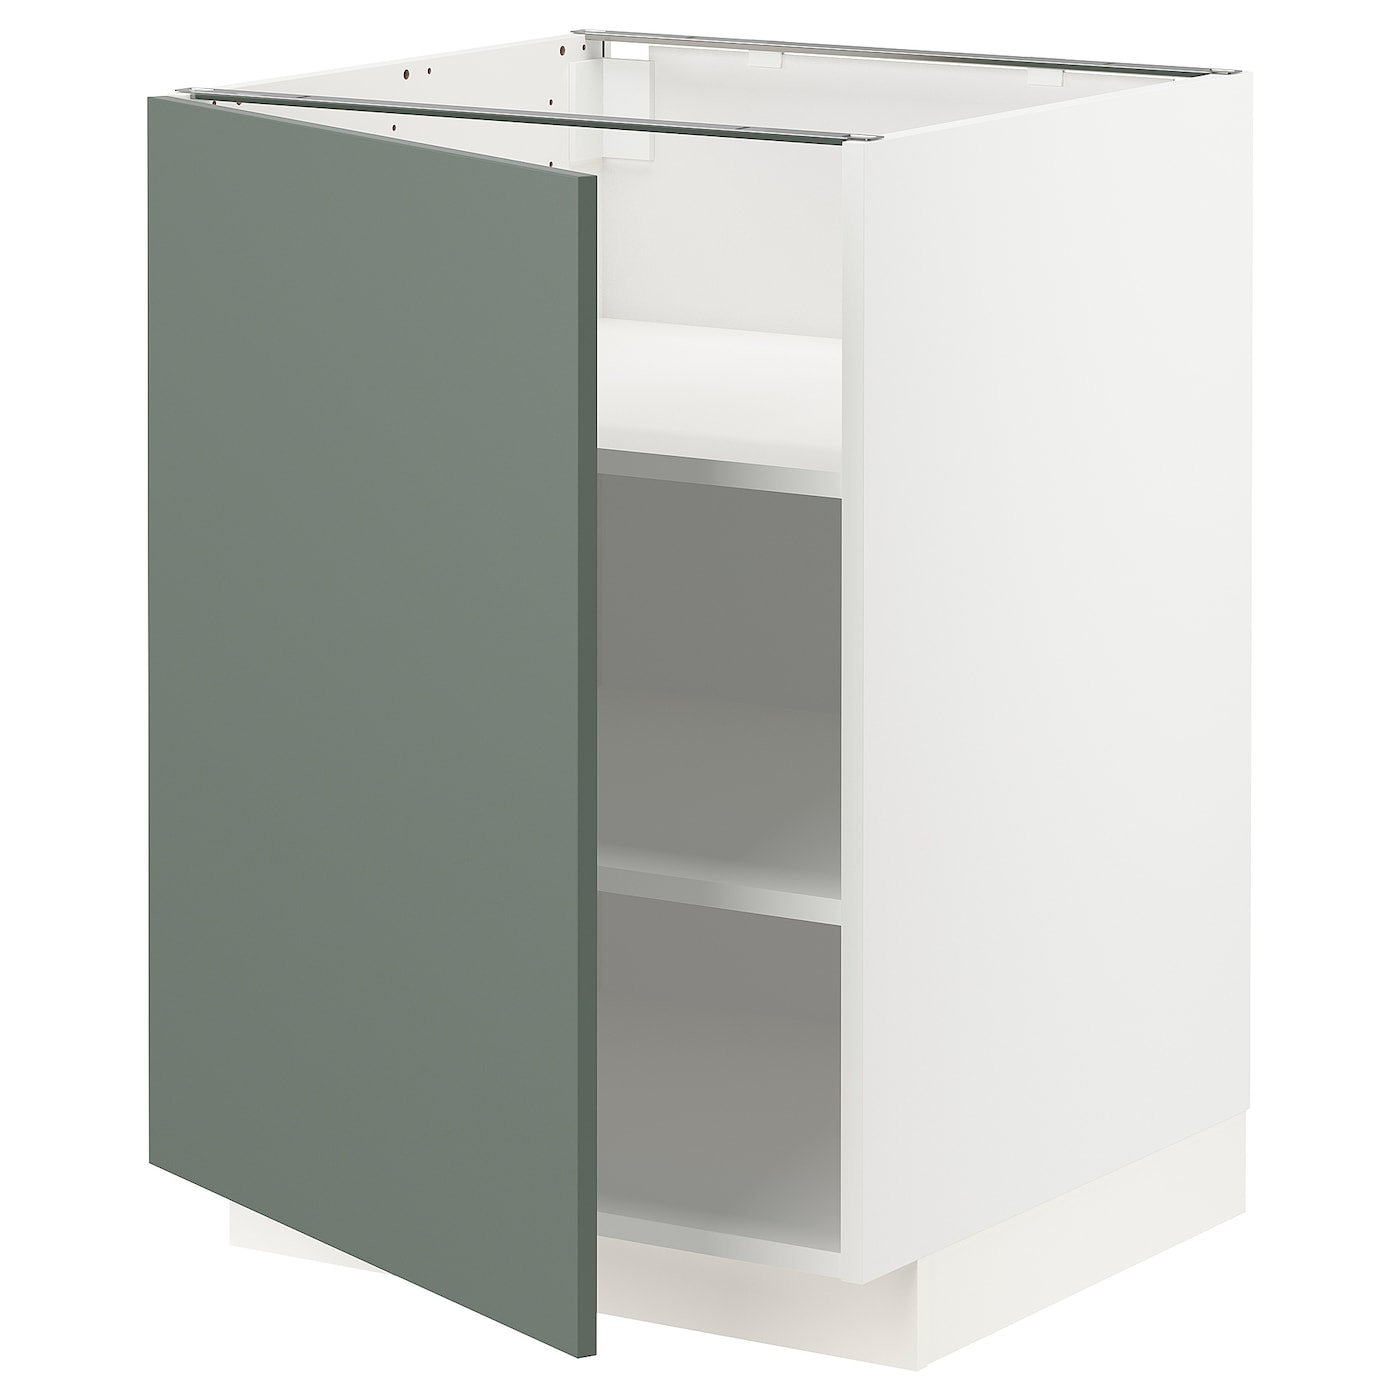 Напольный шкаф  - IKEA METOD, 88x62x60см, белый/серо-зеленый, МЕТОД ИКЕА